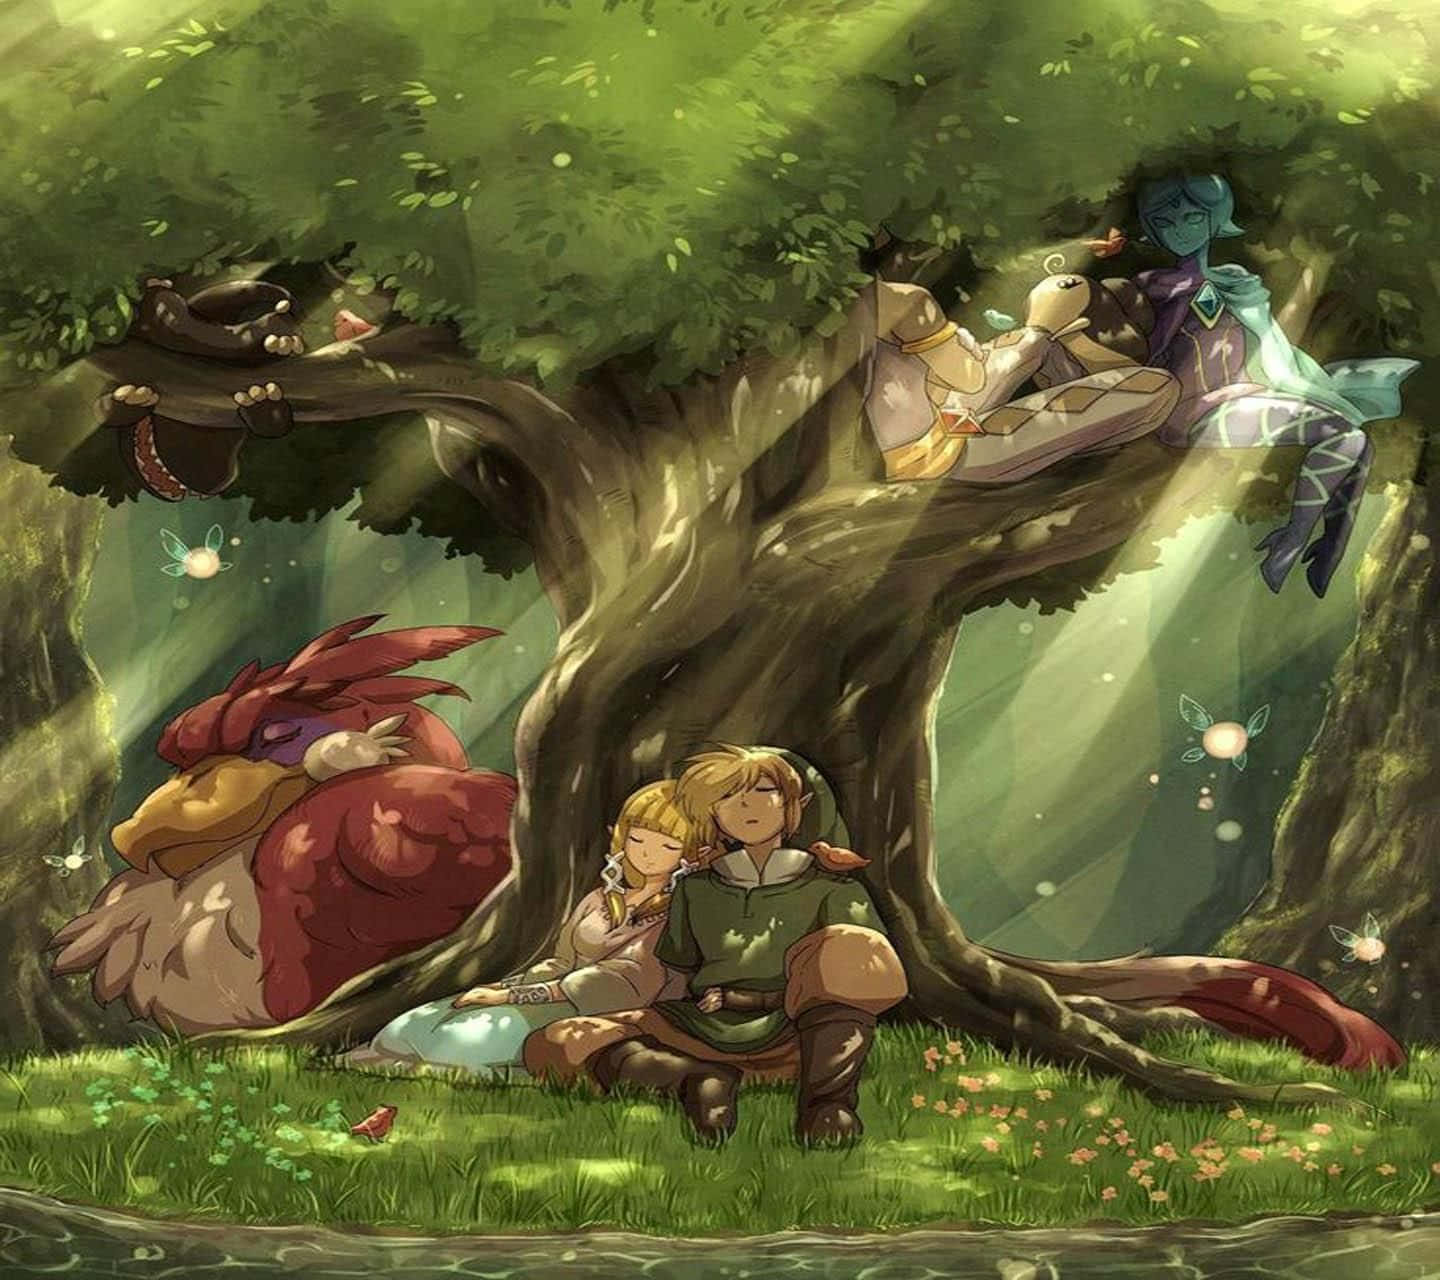 SS] Link, Zelda and Loftwings wallpaper I made : r/zelda